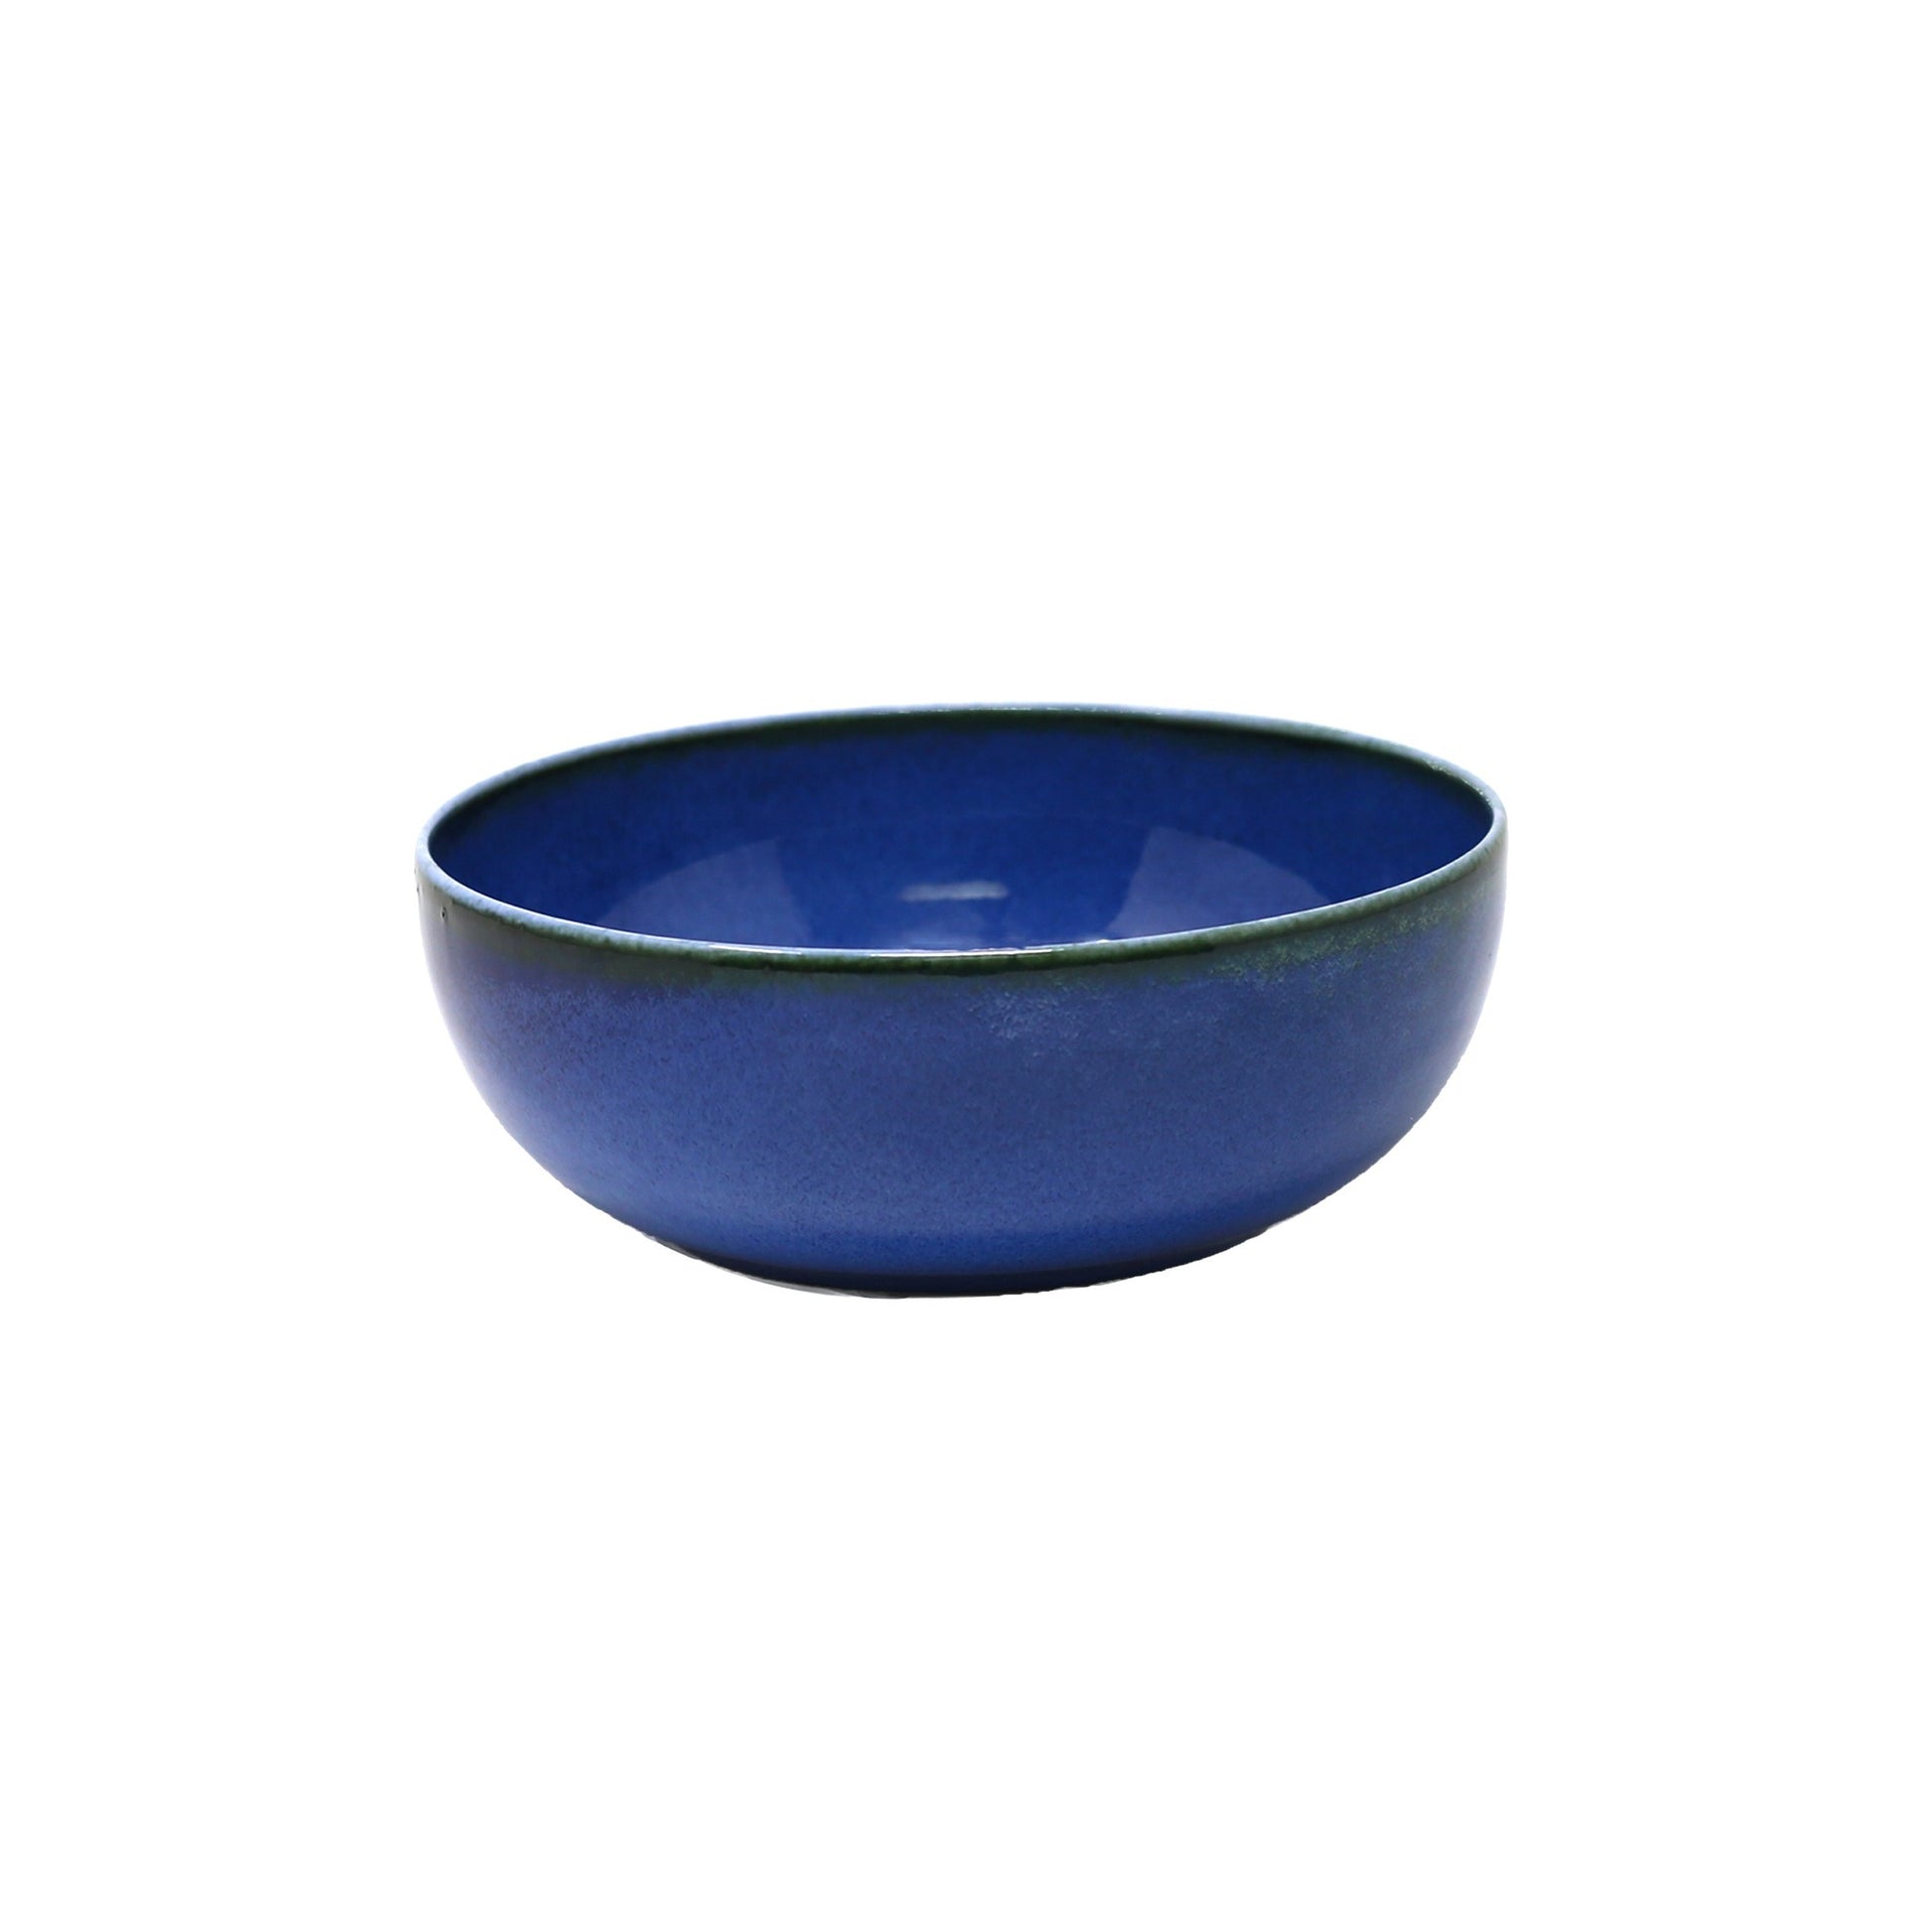 Mainstays ensemble de vaisselle à motif bleu émaillé, 12 pièces